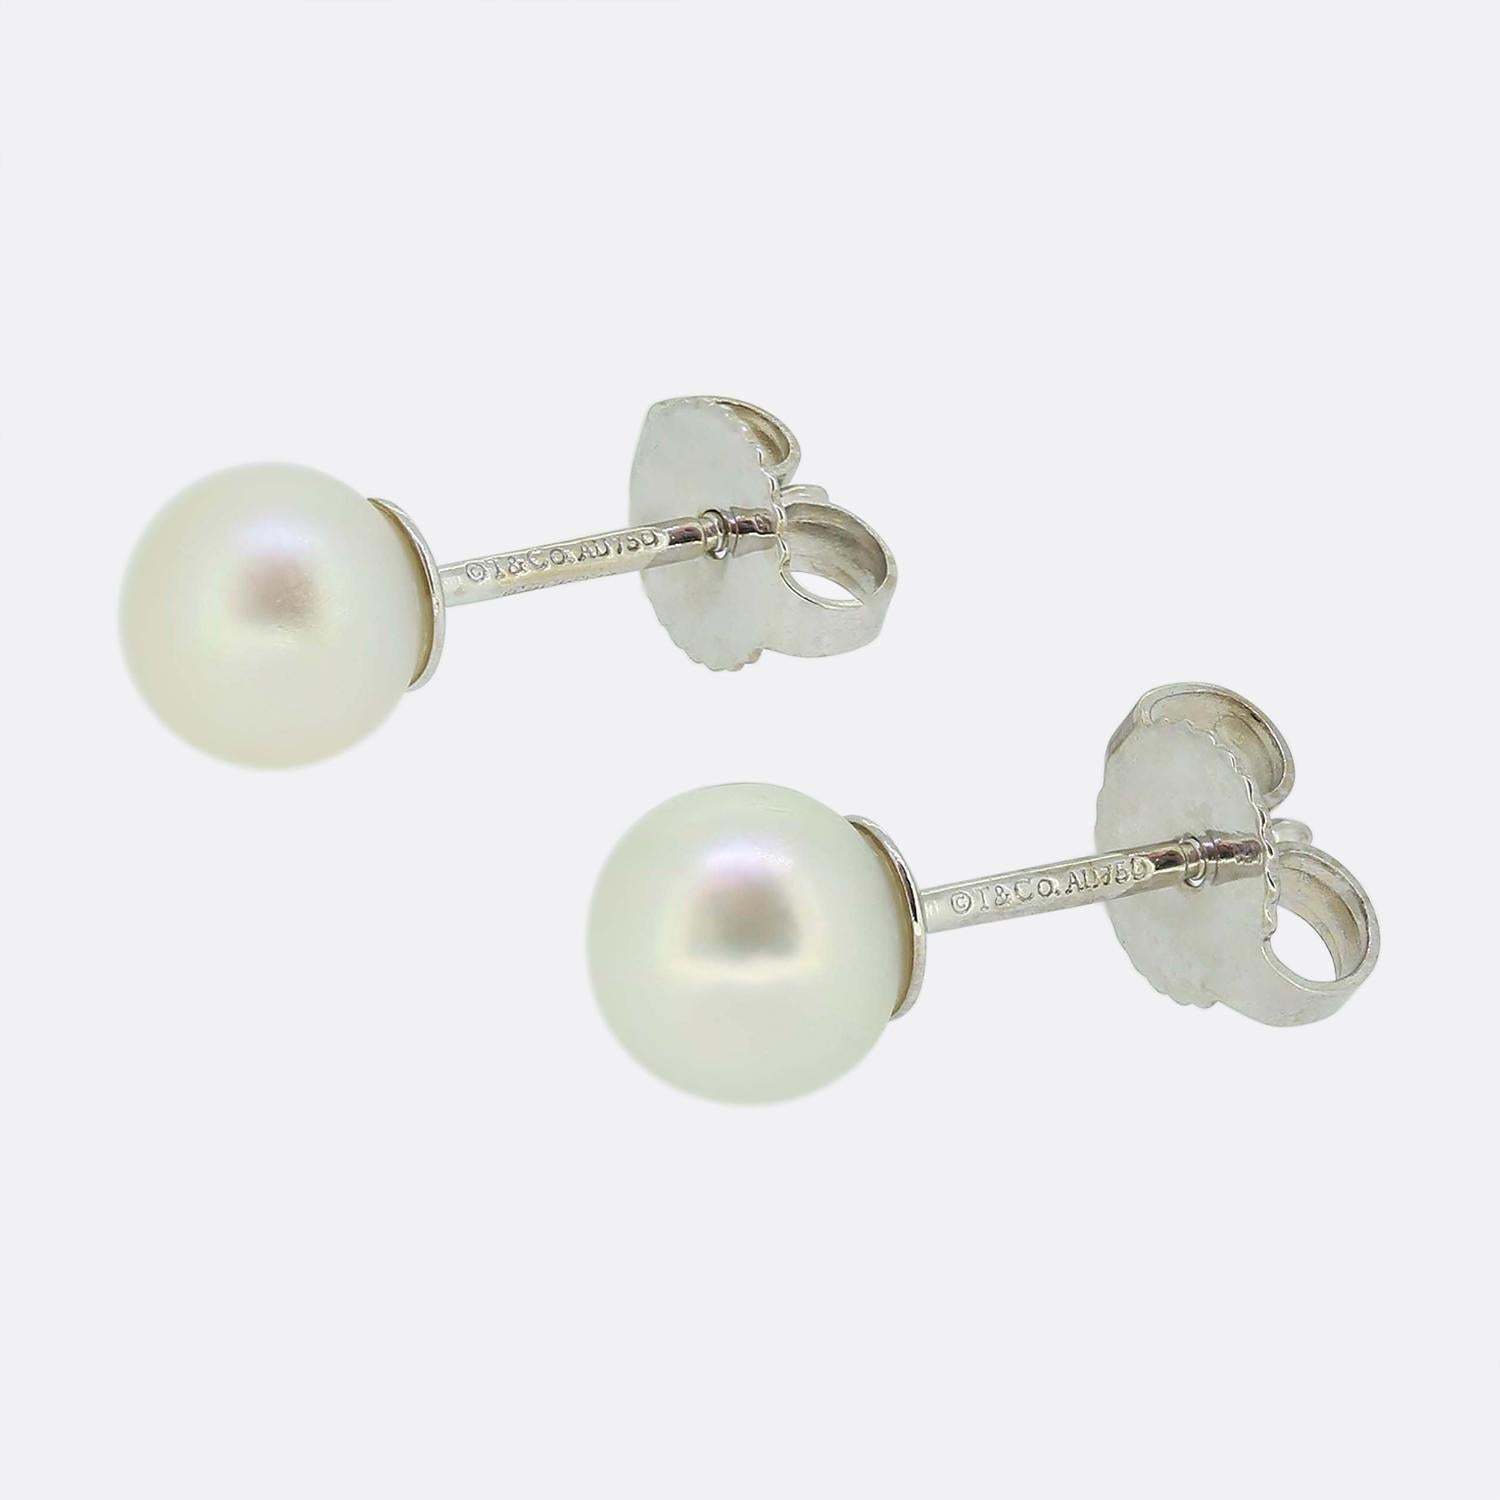 Hier haben wir ein klassisch gestyltes Paar Perlen-Ohrstecker des weltbekannten Schmuckdesigners Tiffany & Co. Jedes Stück ist aus 18 Karat Weißgold gefertigt und mit einer einzelnen 7 mm großen runden Akoya-Zuchtperle besetzt.

Zustand: Gebraucht